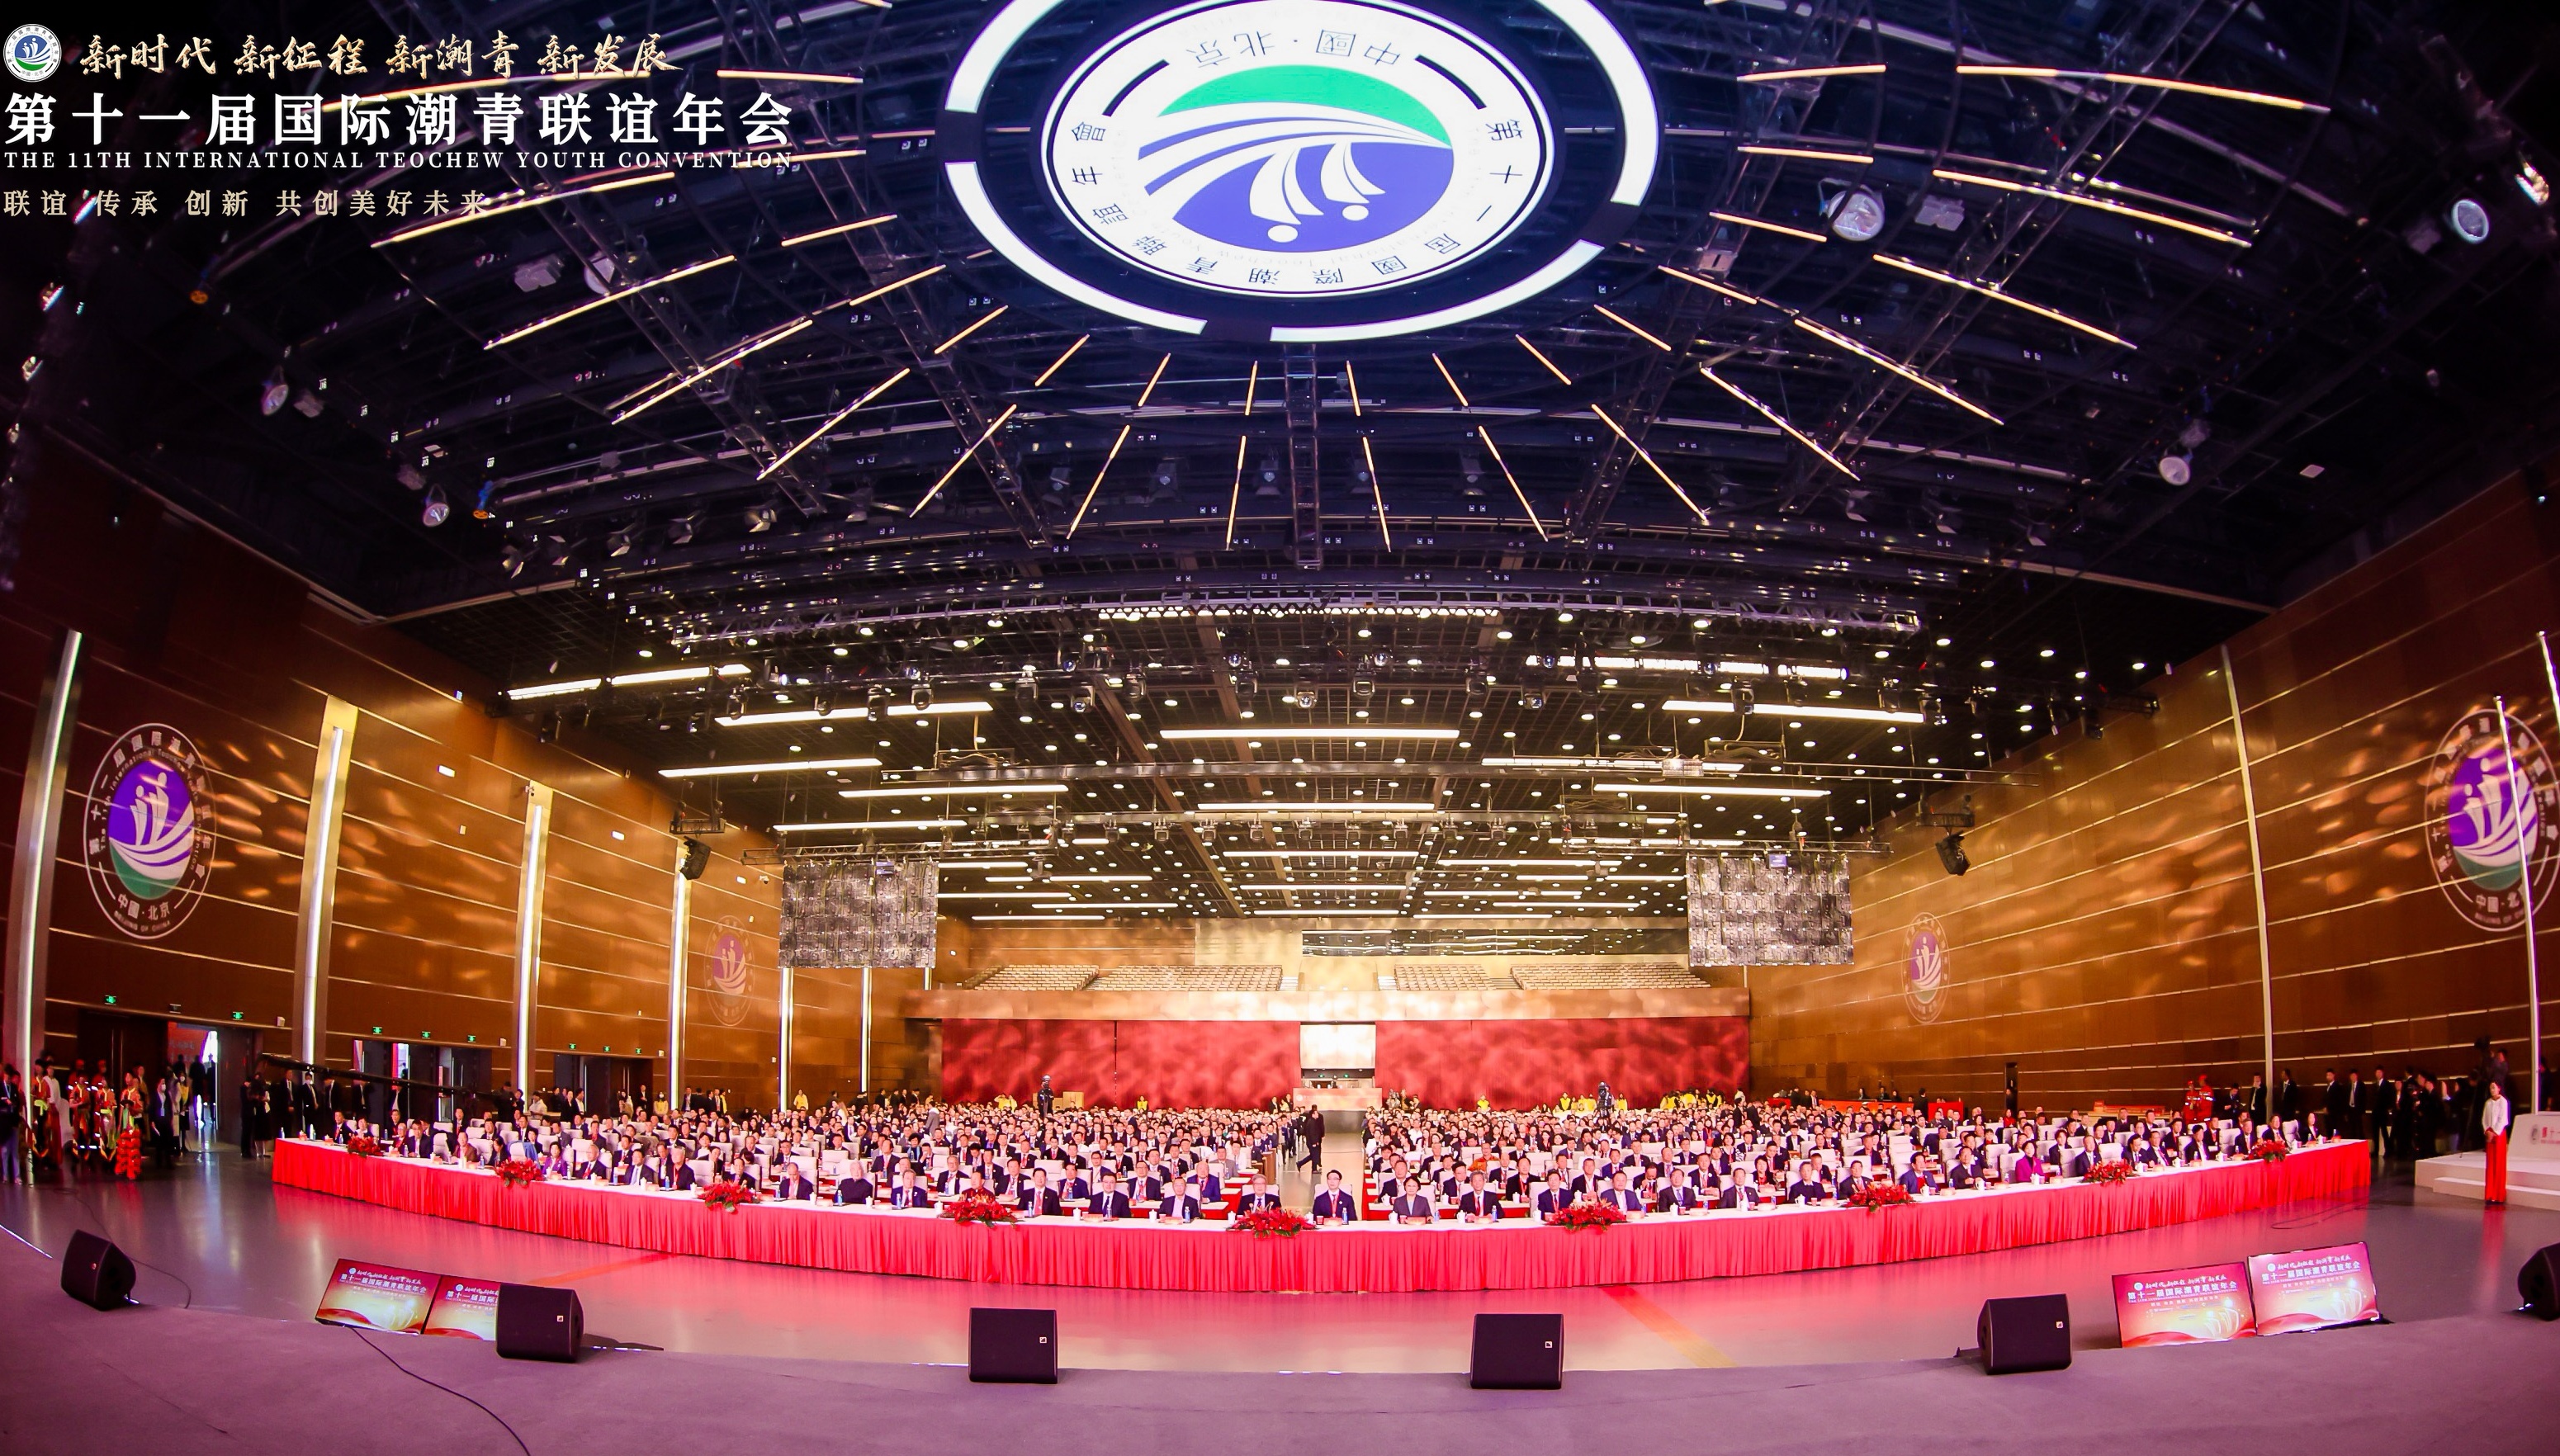 第十一届国际潮青联谊年会在北京隆重举行 大会荣聘我会黄瑞杰会长为荣誉主席